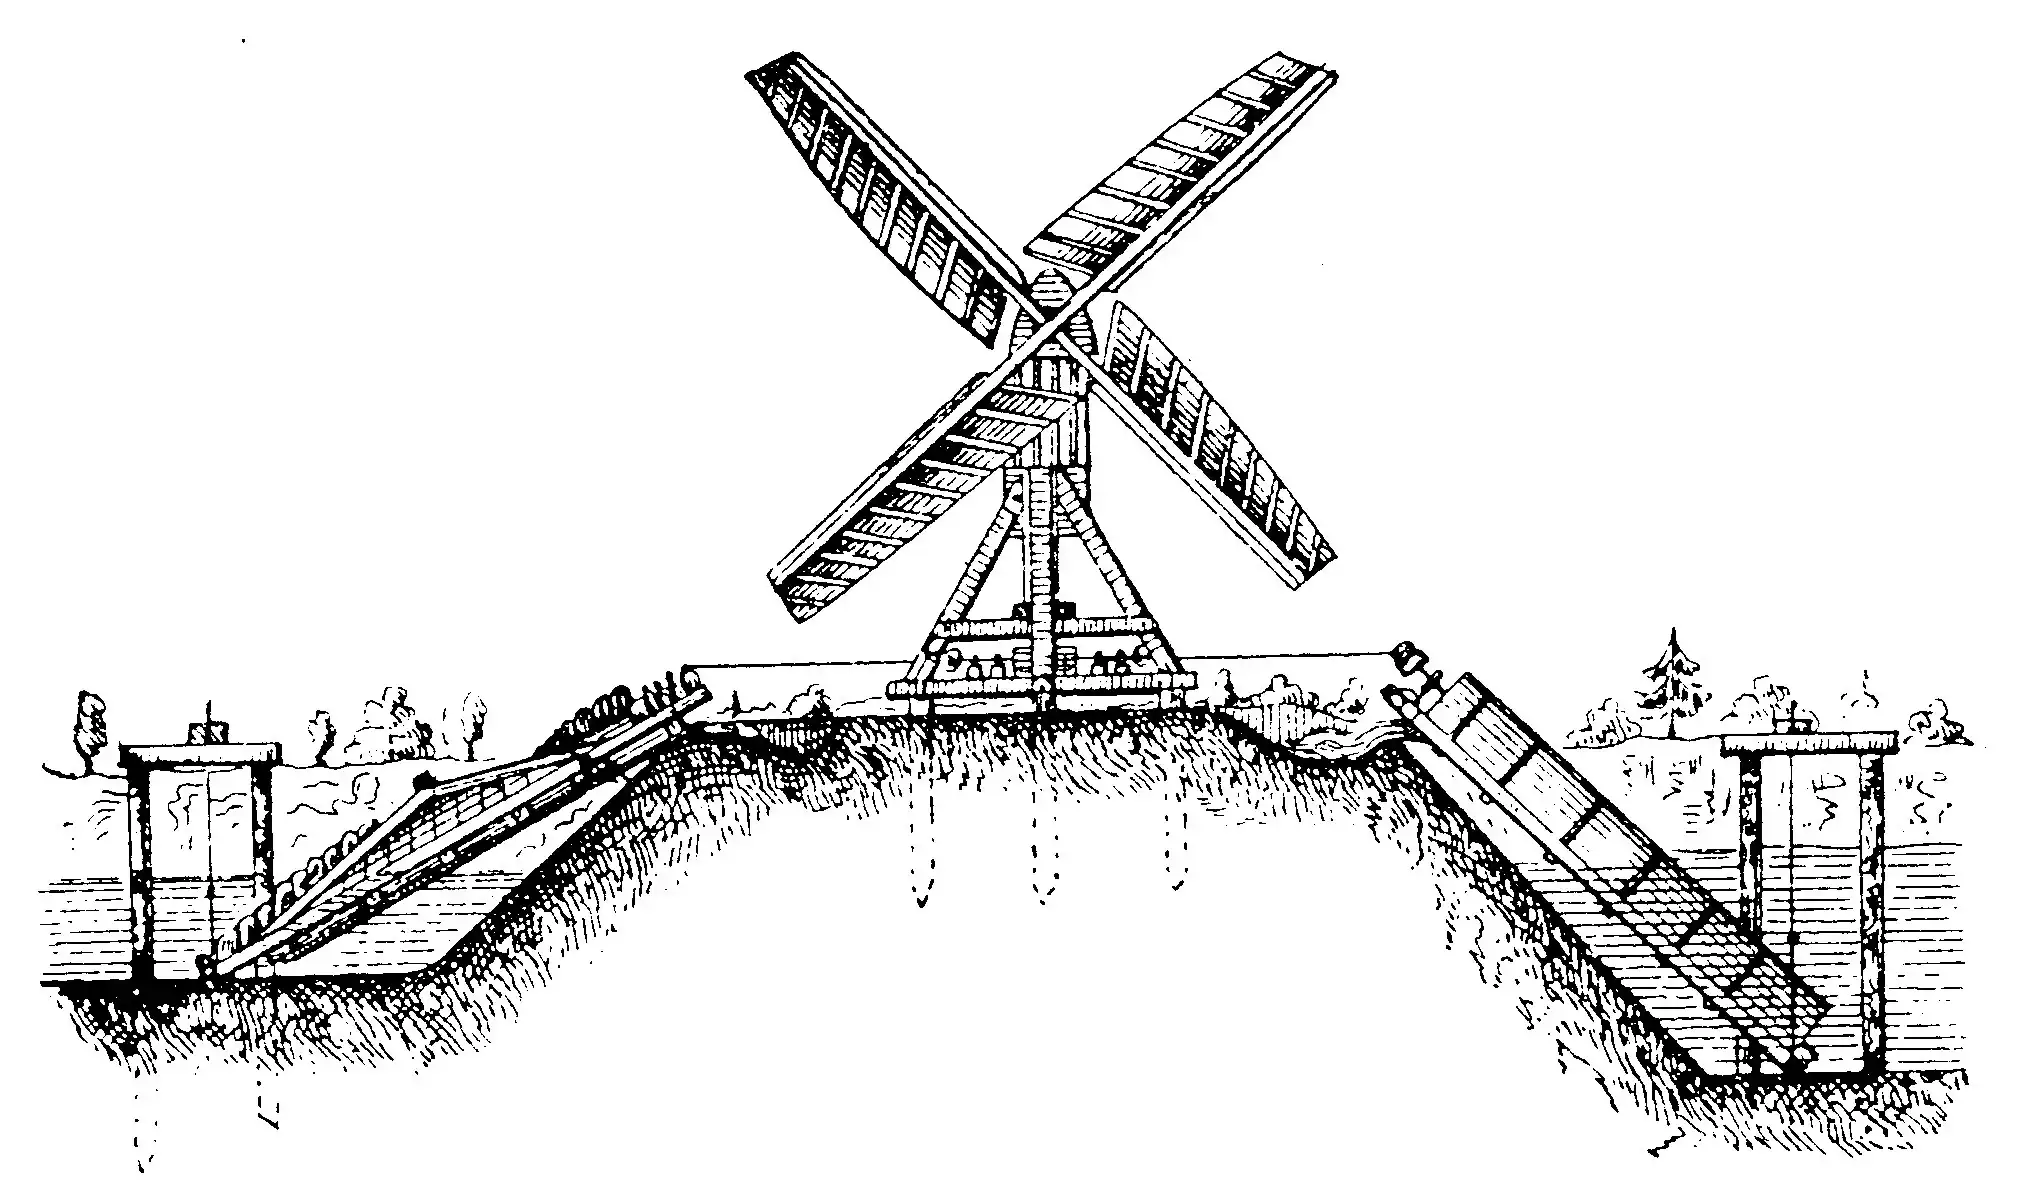 Wasserschöpf-Windmühle/Windschnecke, 19 Jh.